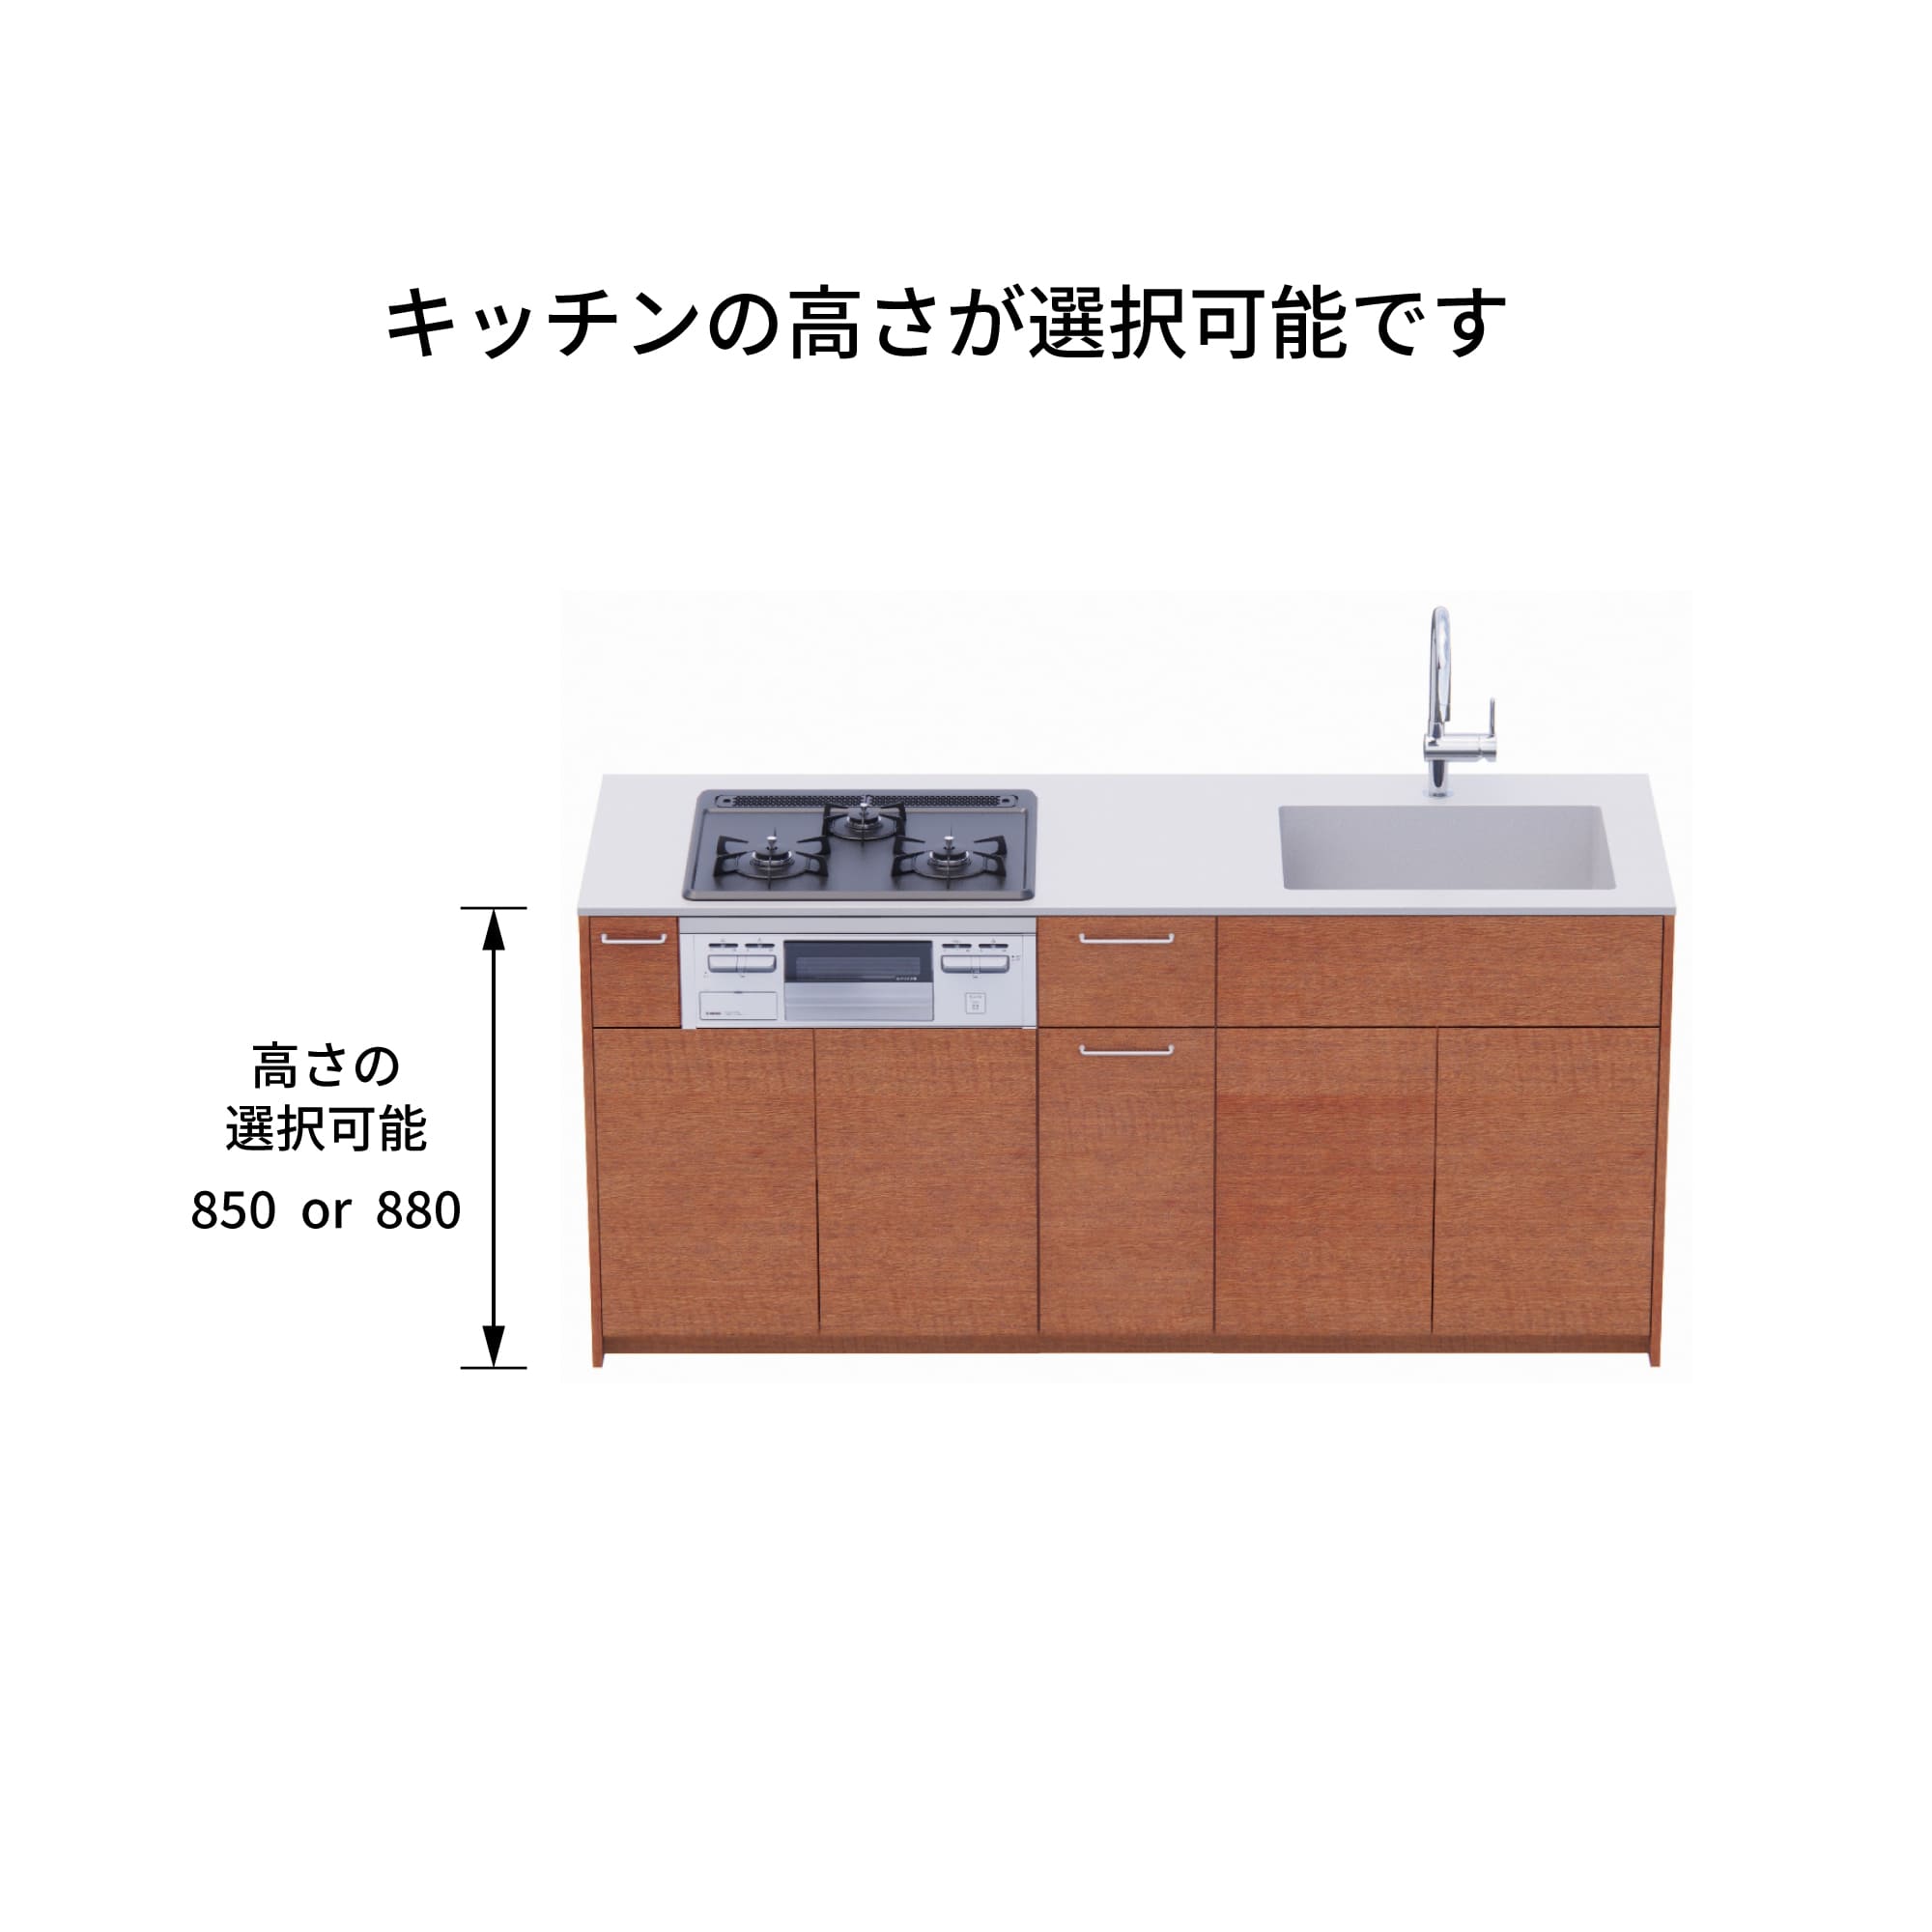 木製システムキッチン 対面型 W1840・コンロあり / オーブンなし / 食洗機なし KB-KC022-29-G183 キッチン高さを選択できます